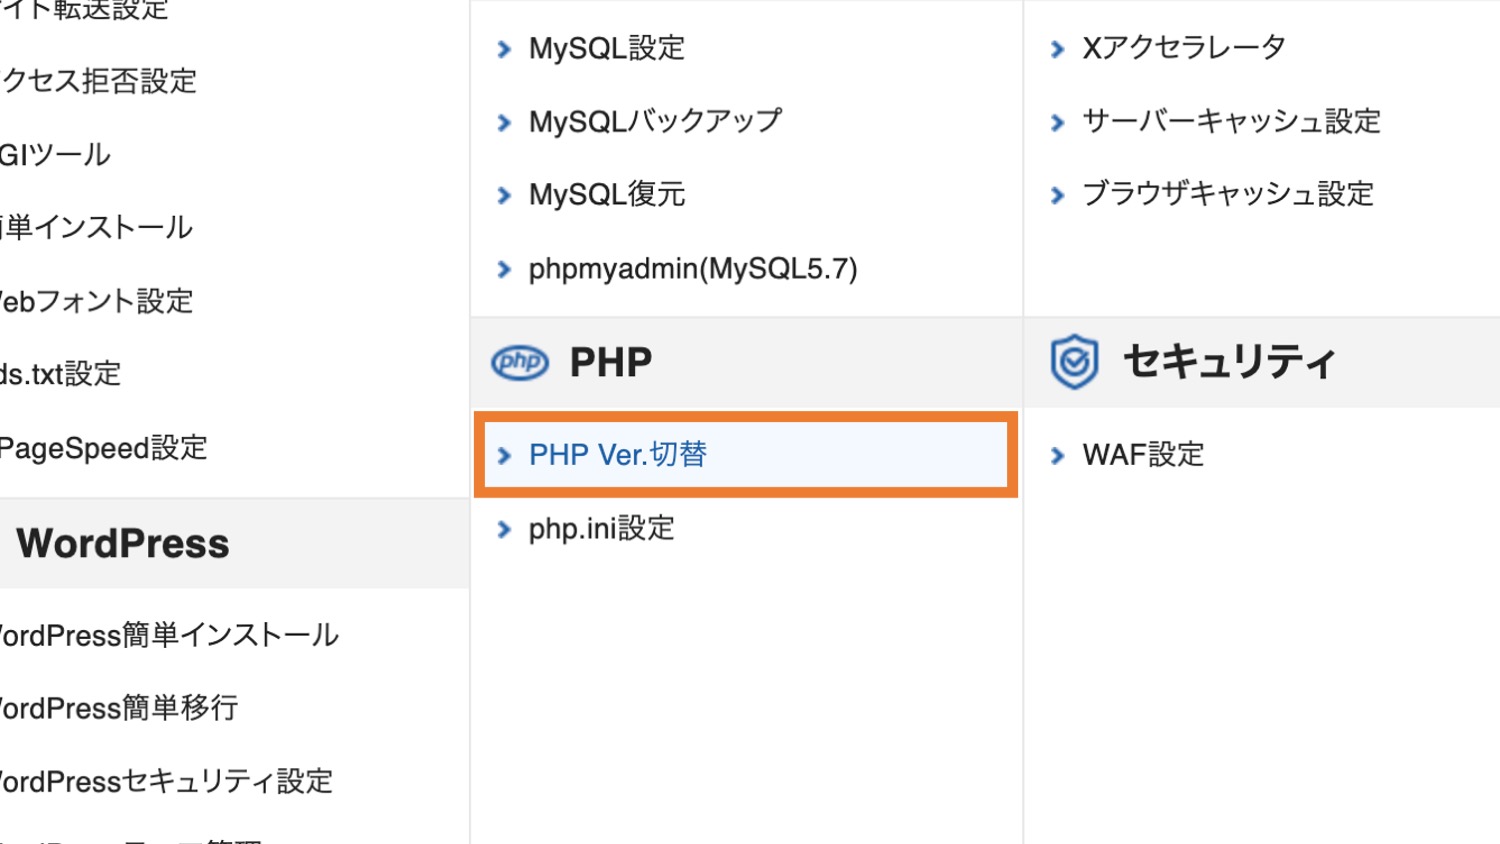 「PHP Ver. 切替」をクリック